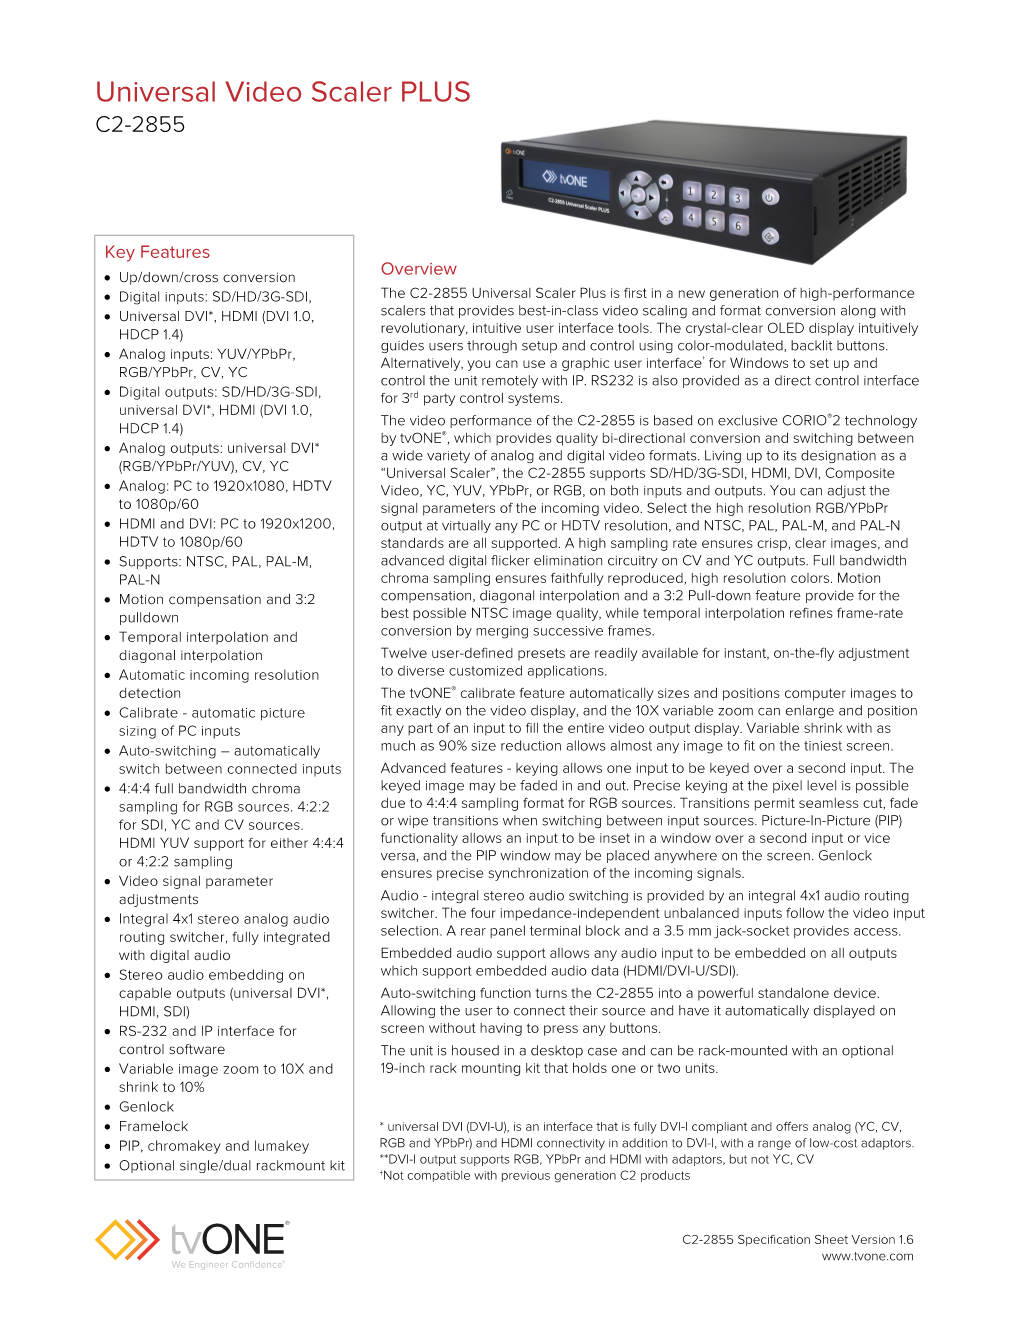 Universal Video Scaler PLUS C2-2855